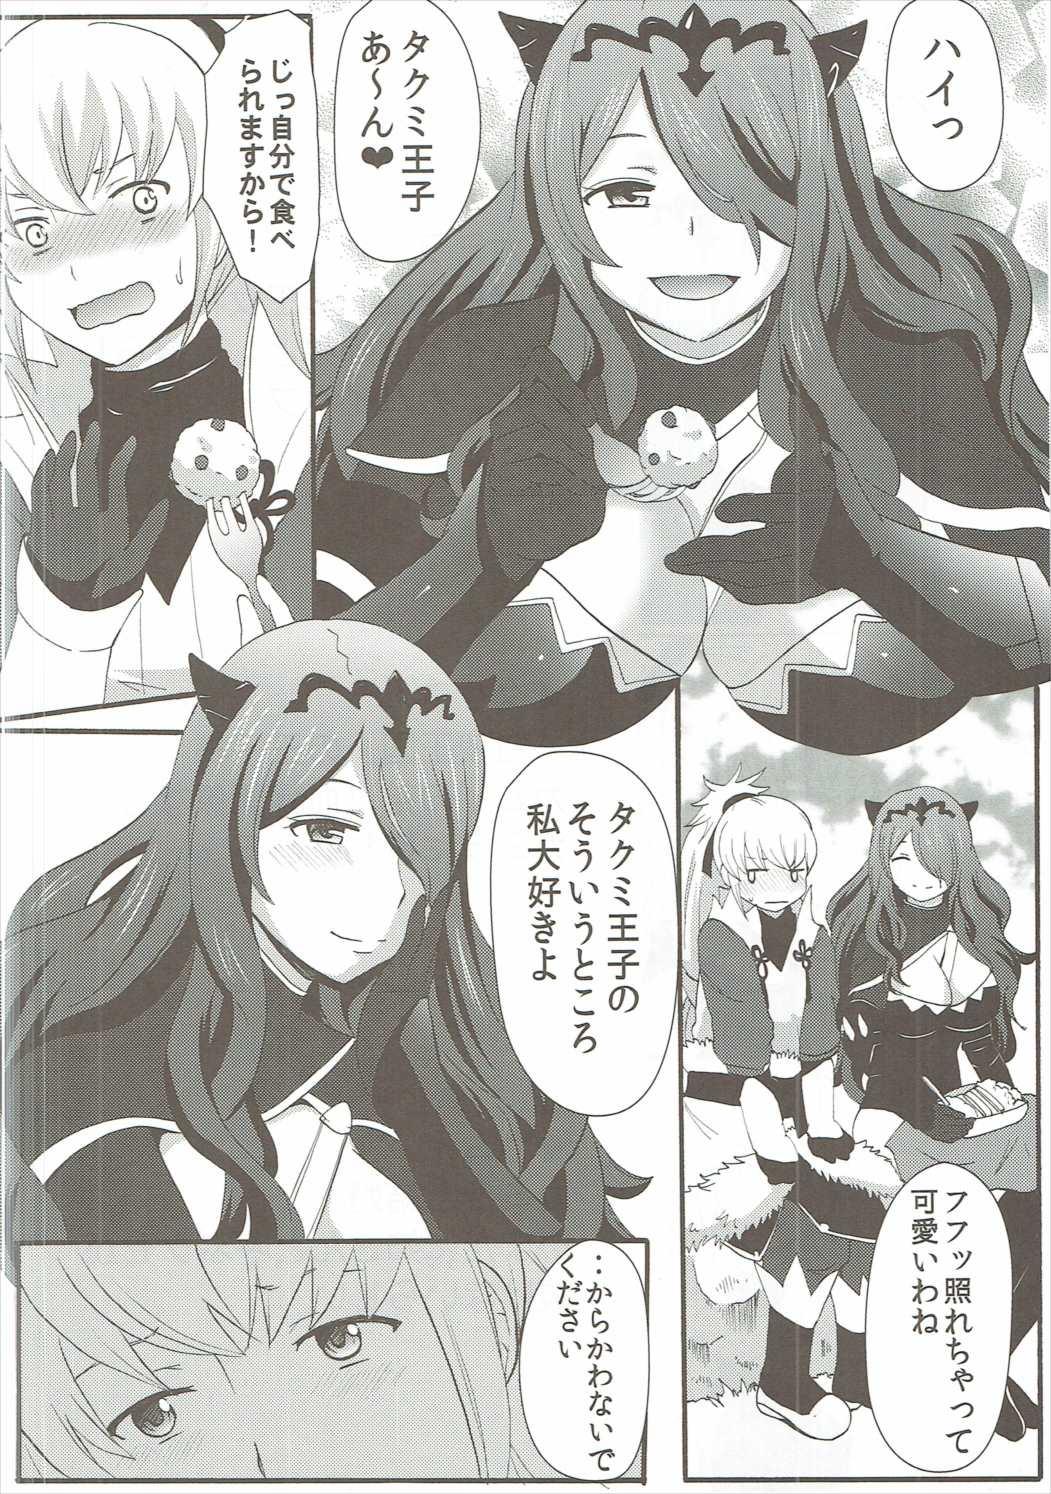 Banho Shinkon Futeizuma Camilla - Fire emblem if Shesafreak - Page 3